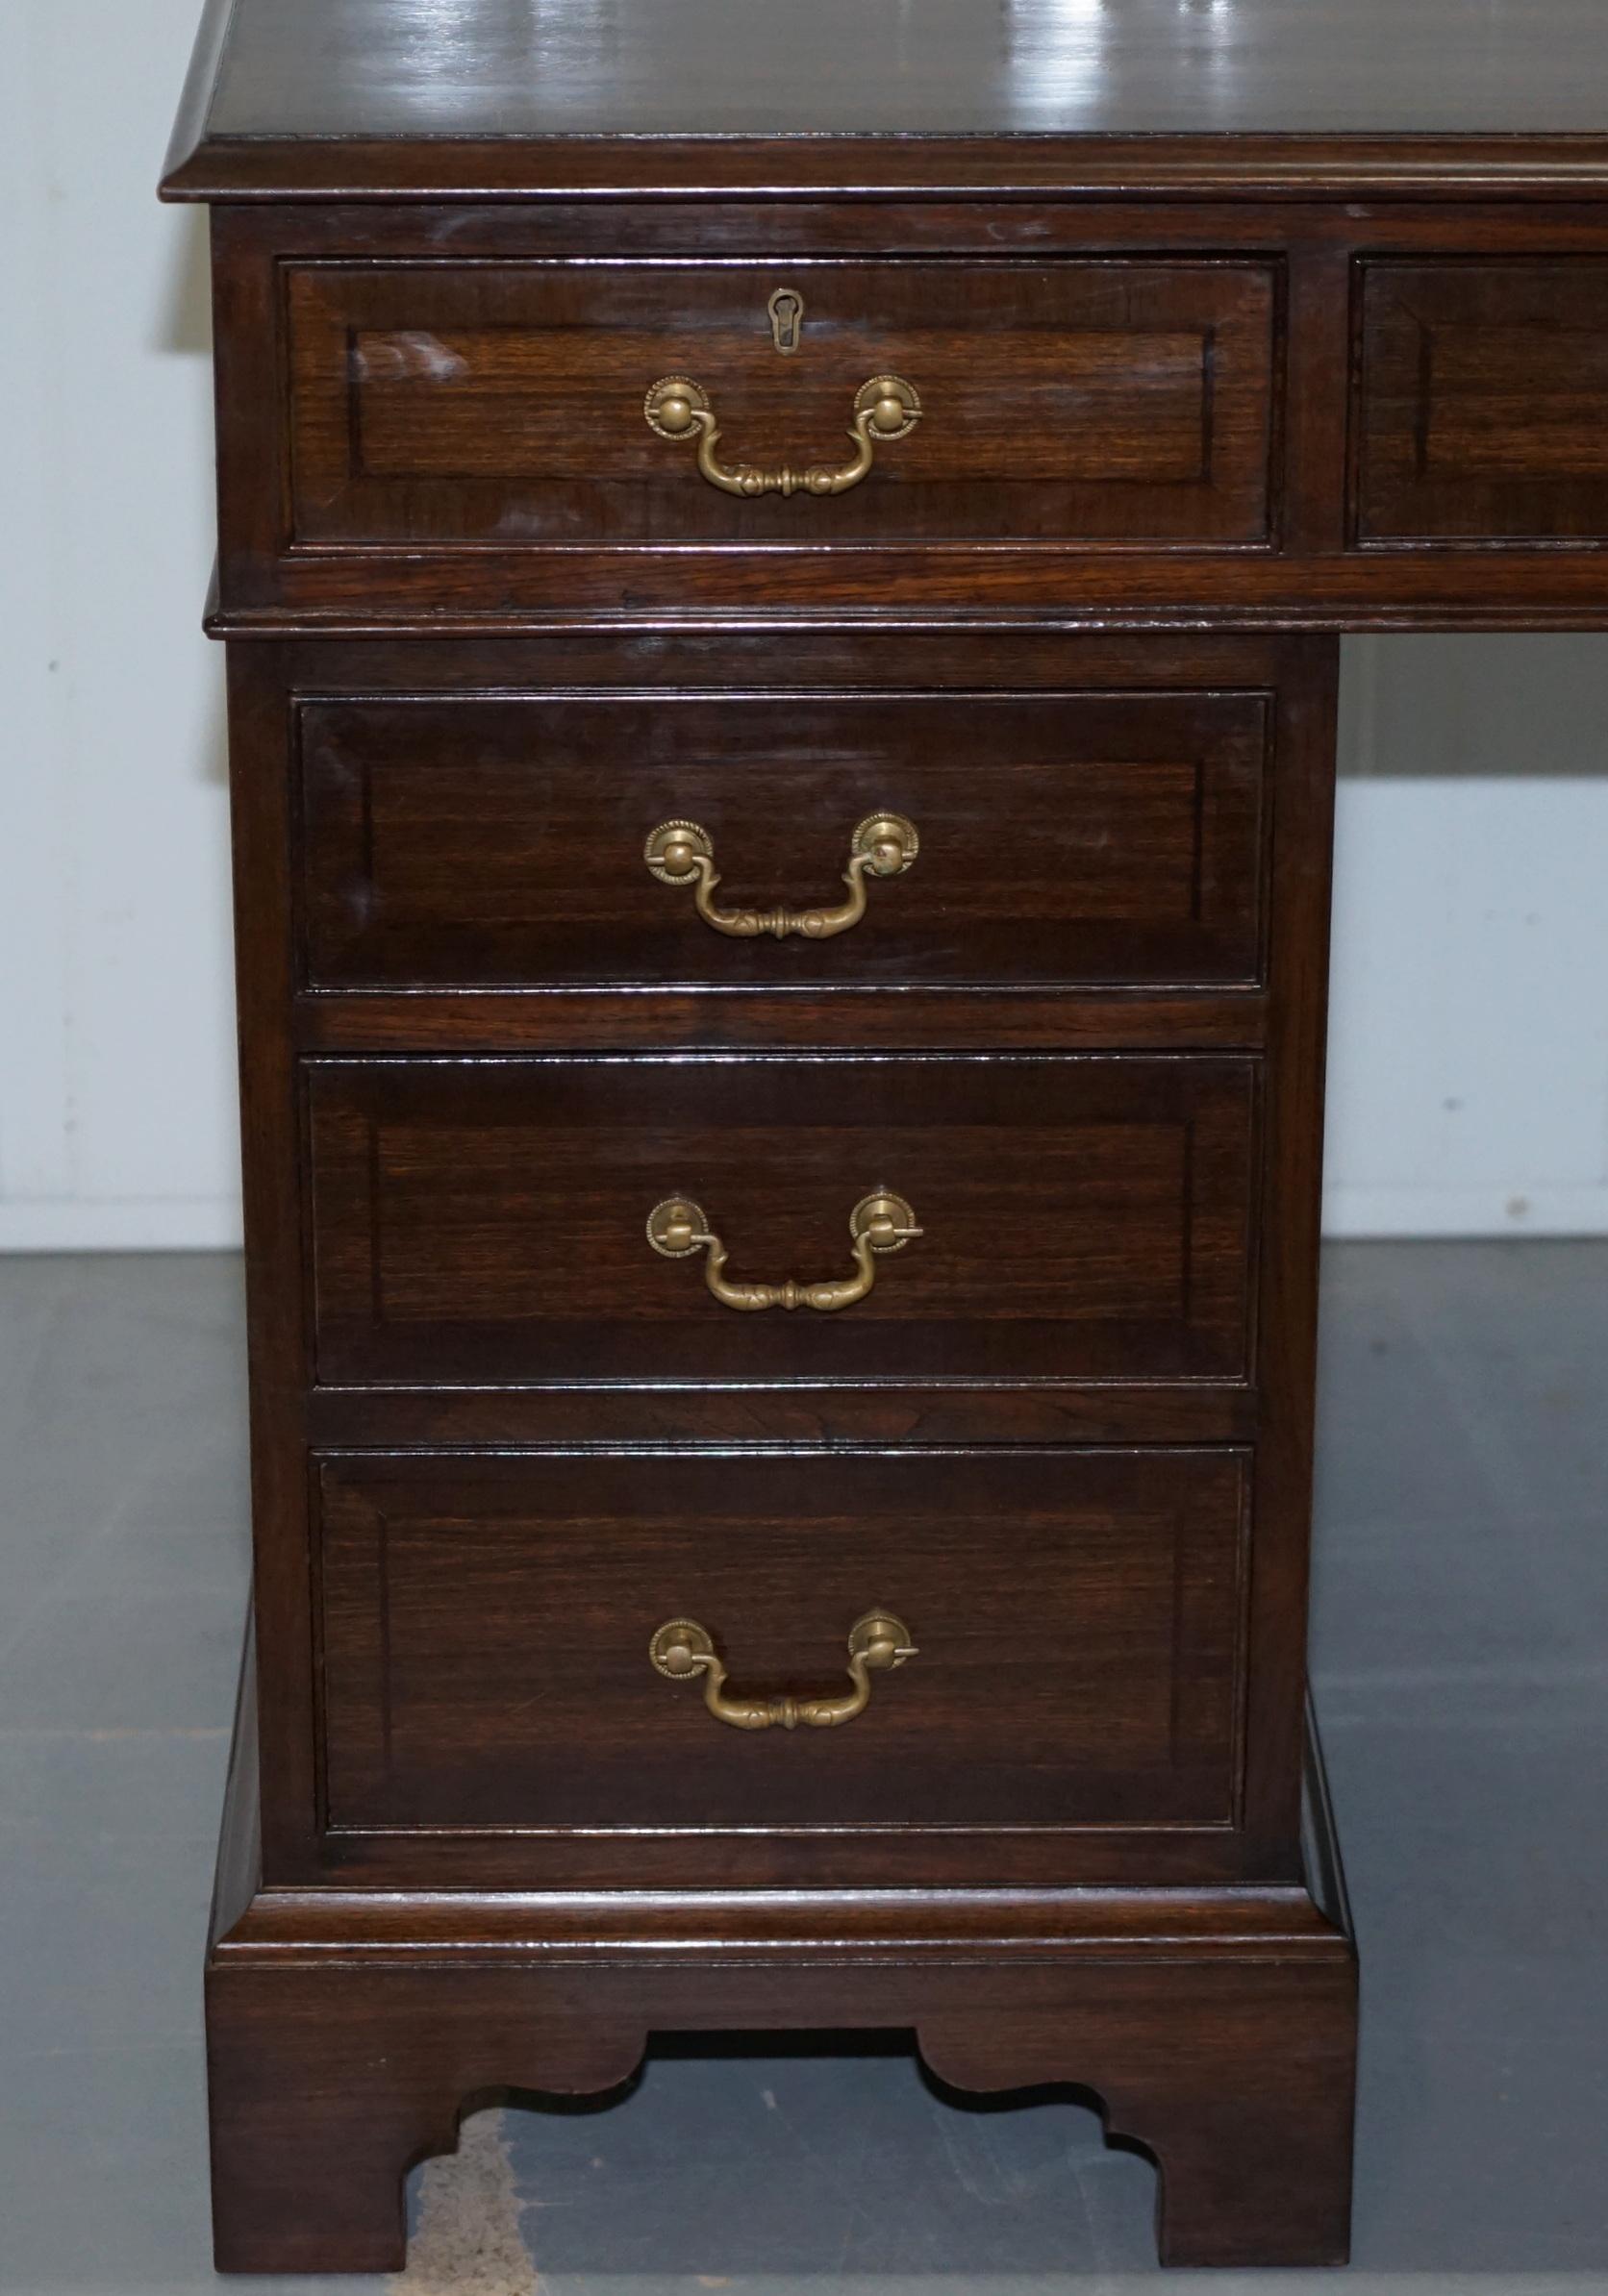 Vintage Stunning Large Solid Hardwood Twin Pedestal Partner Desk Rare Find 3